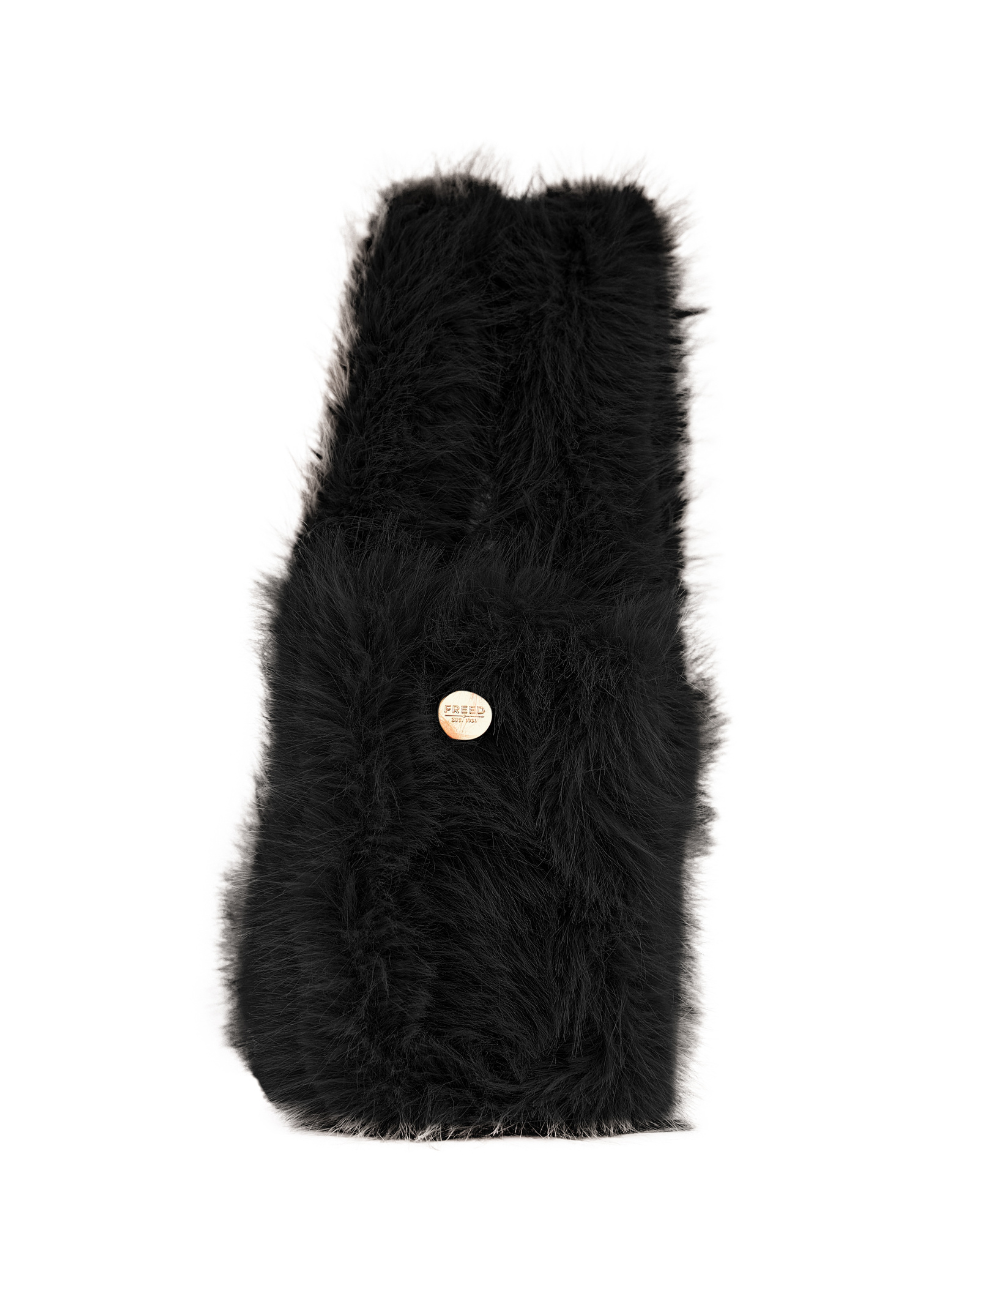 Mini vegan fur tote made in canada fabric end off cut accessories ink black